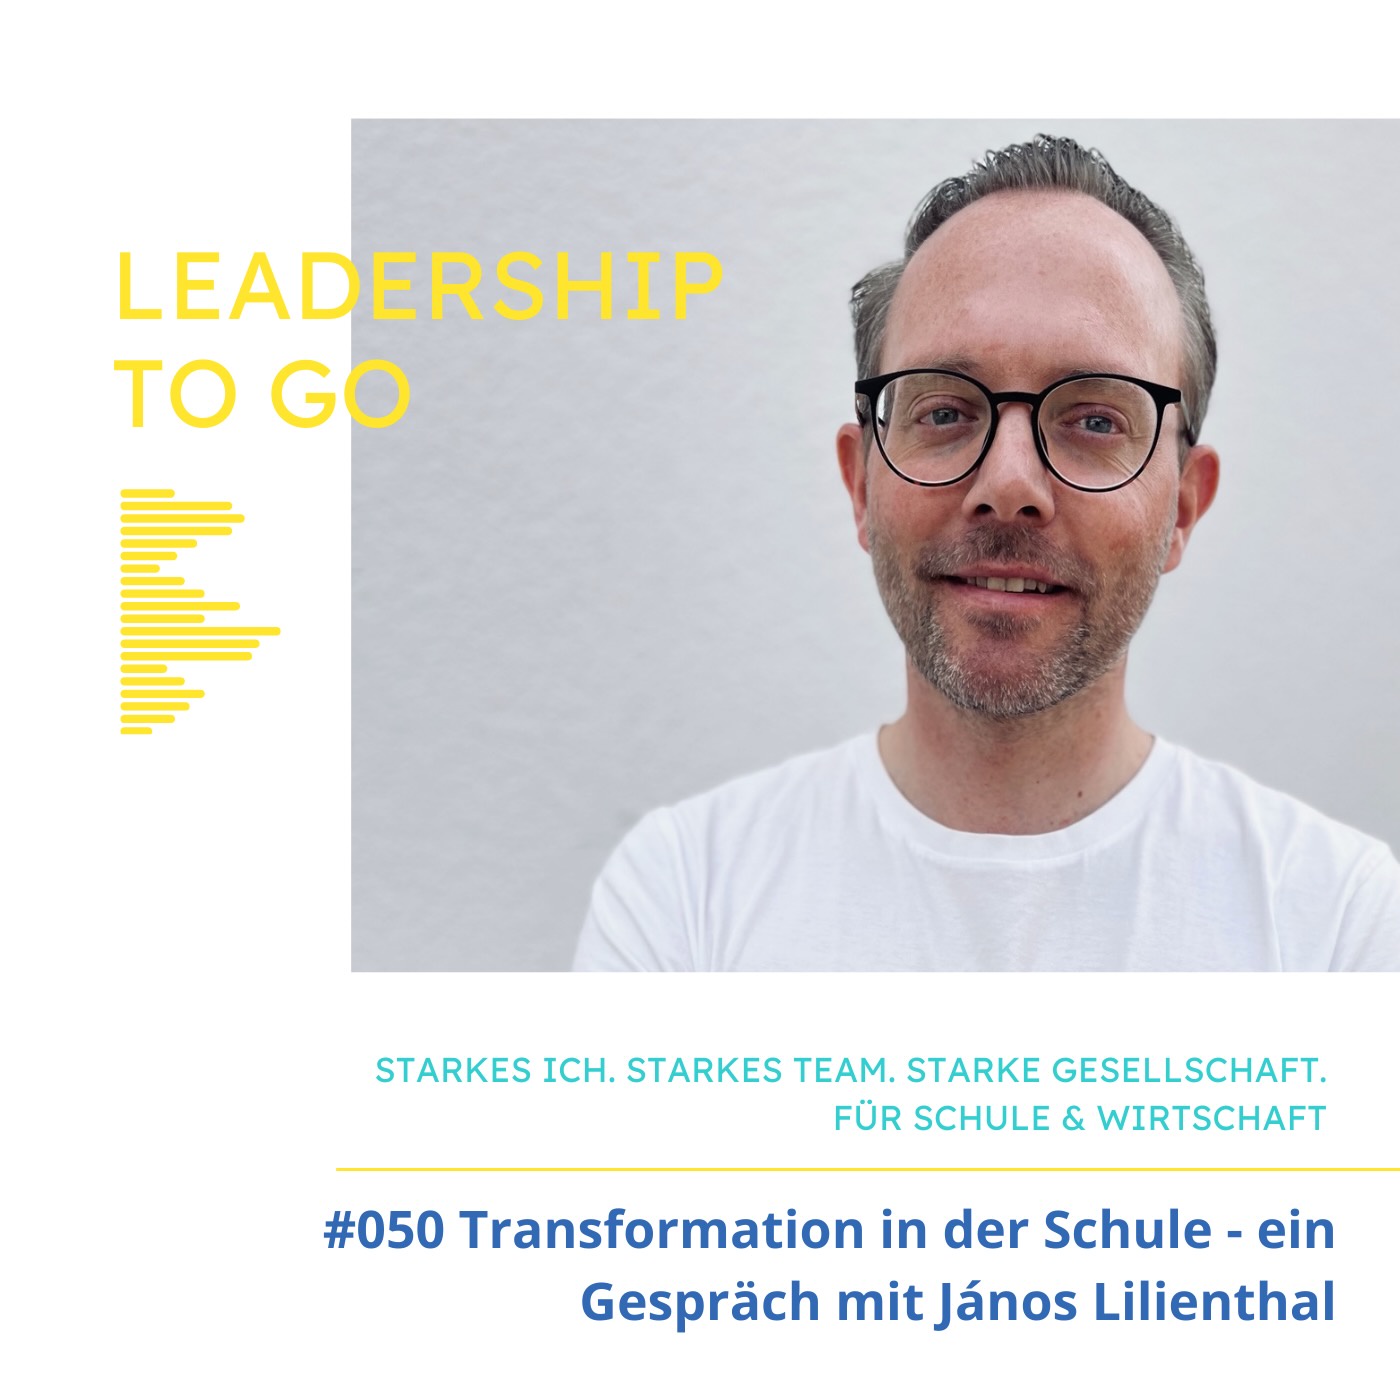 #050 Transformation in der Schule - ein Gespräch mit János Lilienthal